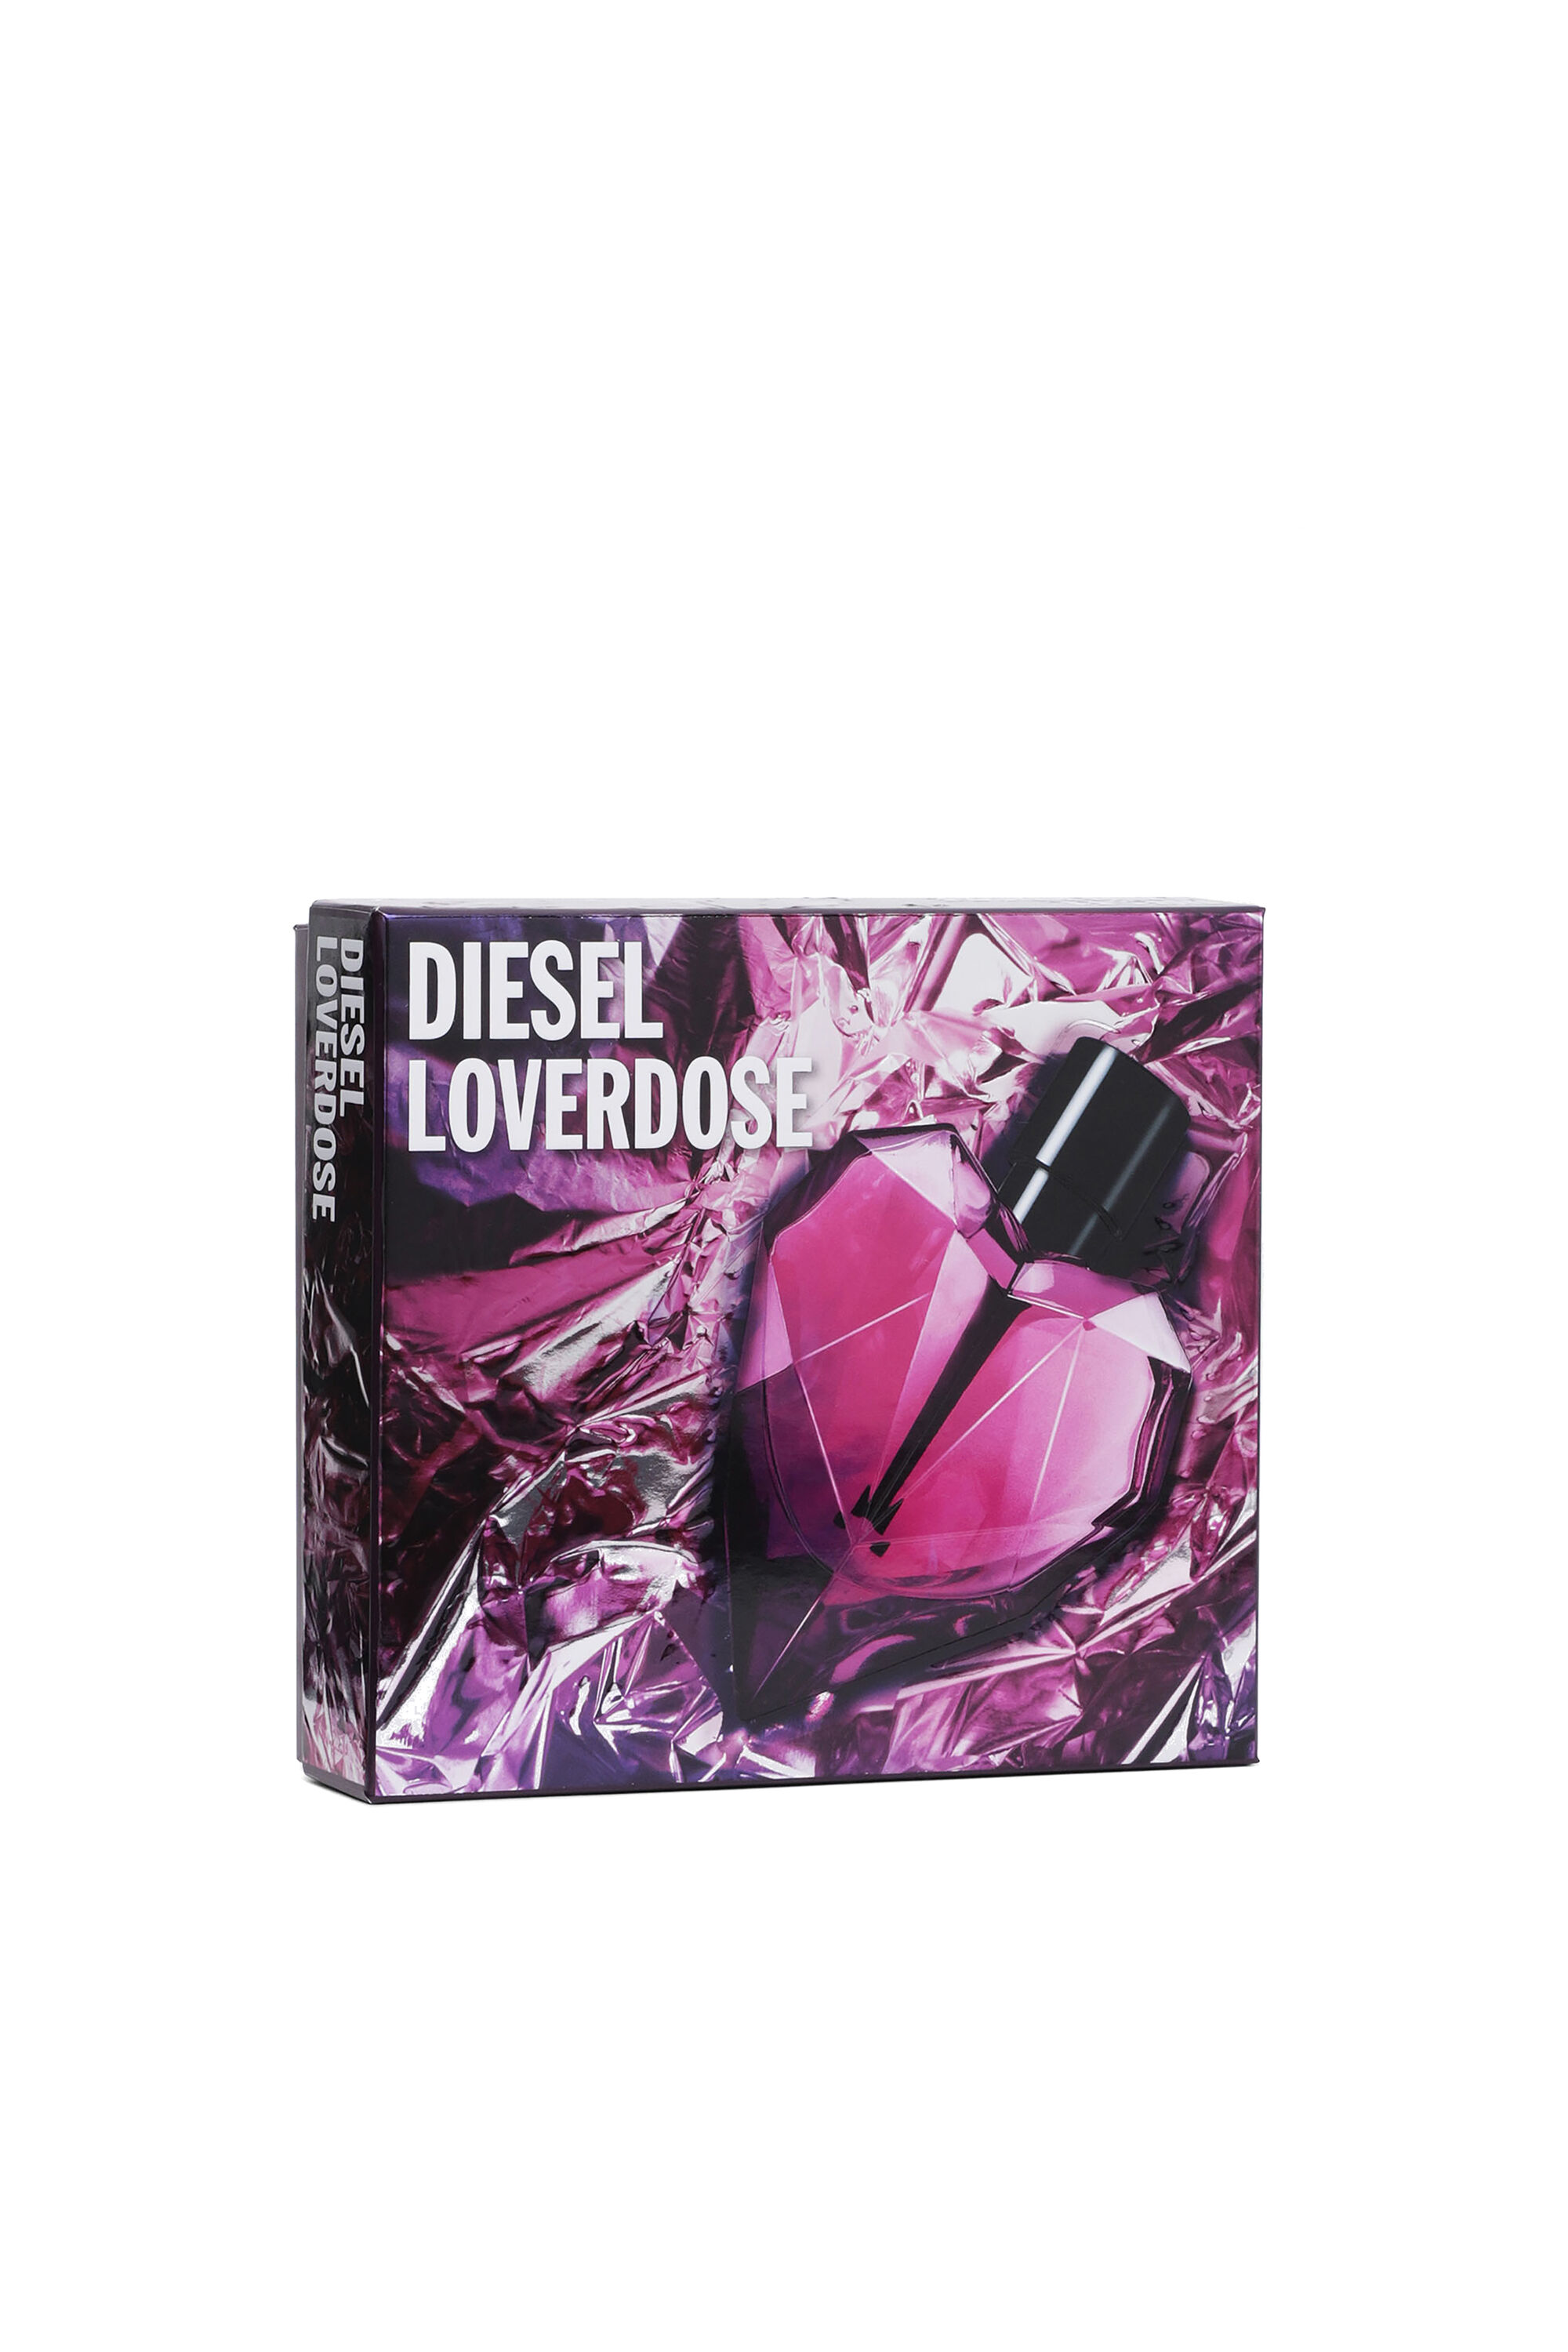 Diesel - LOVERDOSE 30ML GIFT SET, Générique - Image 1